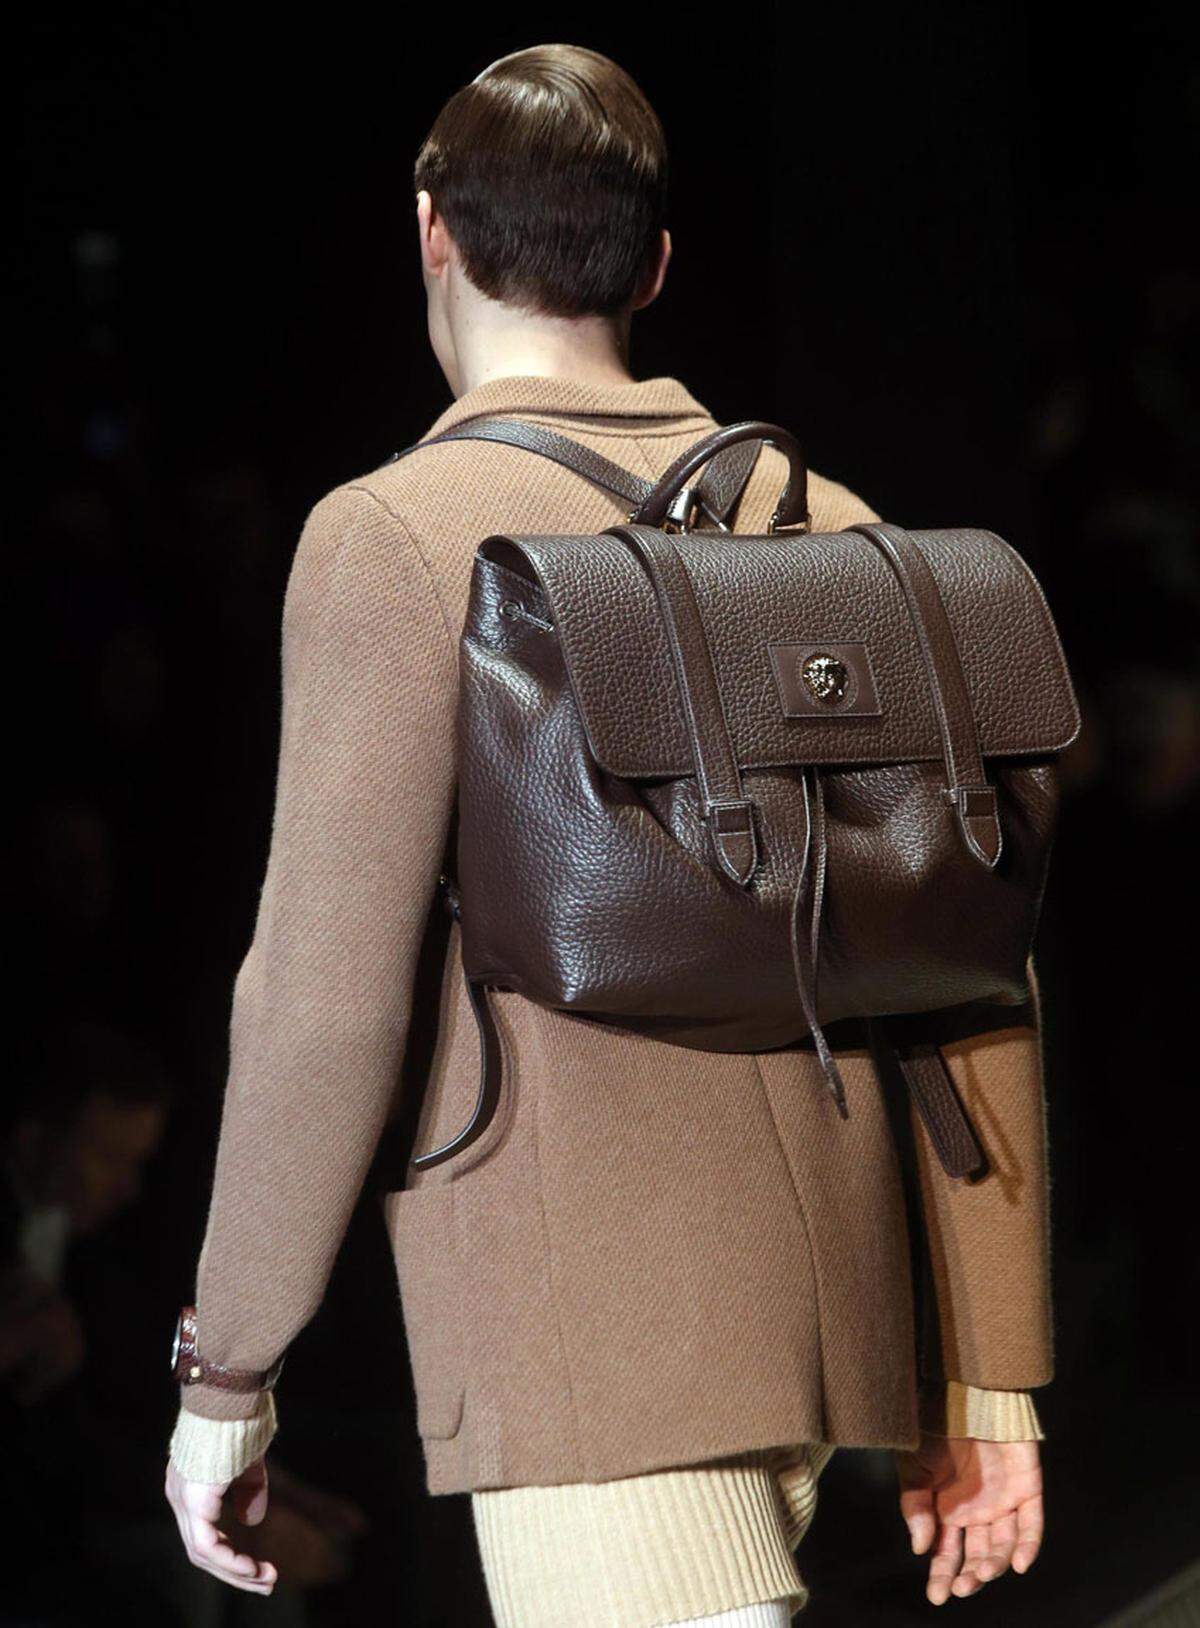 Schultasche statt Rucksack heißt es neuerdings bei Versace.